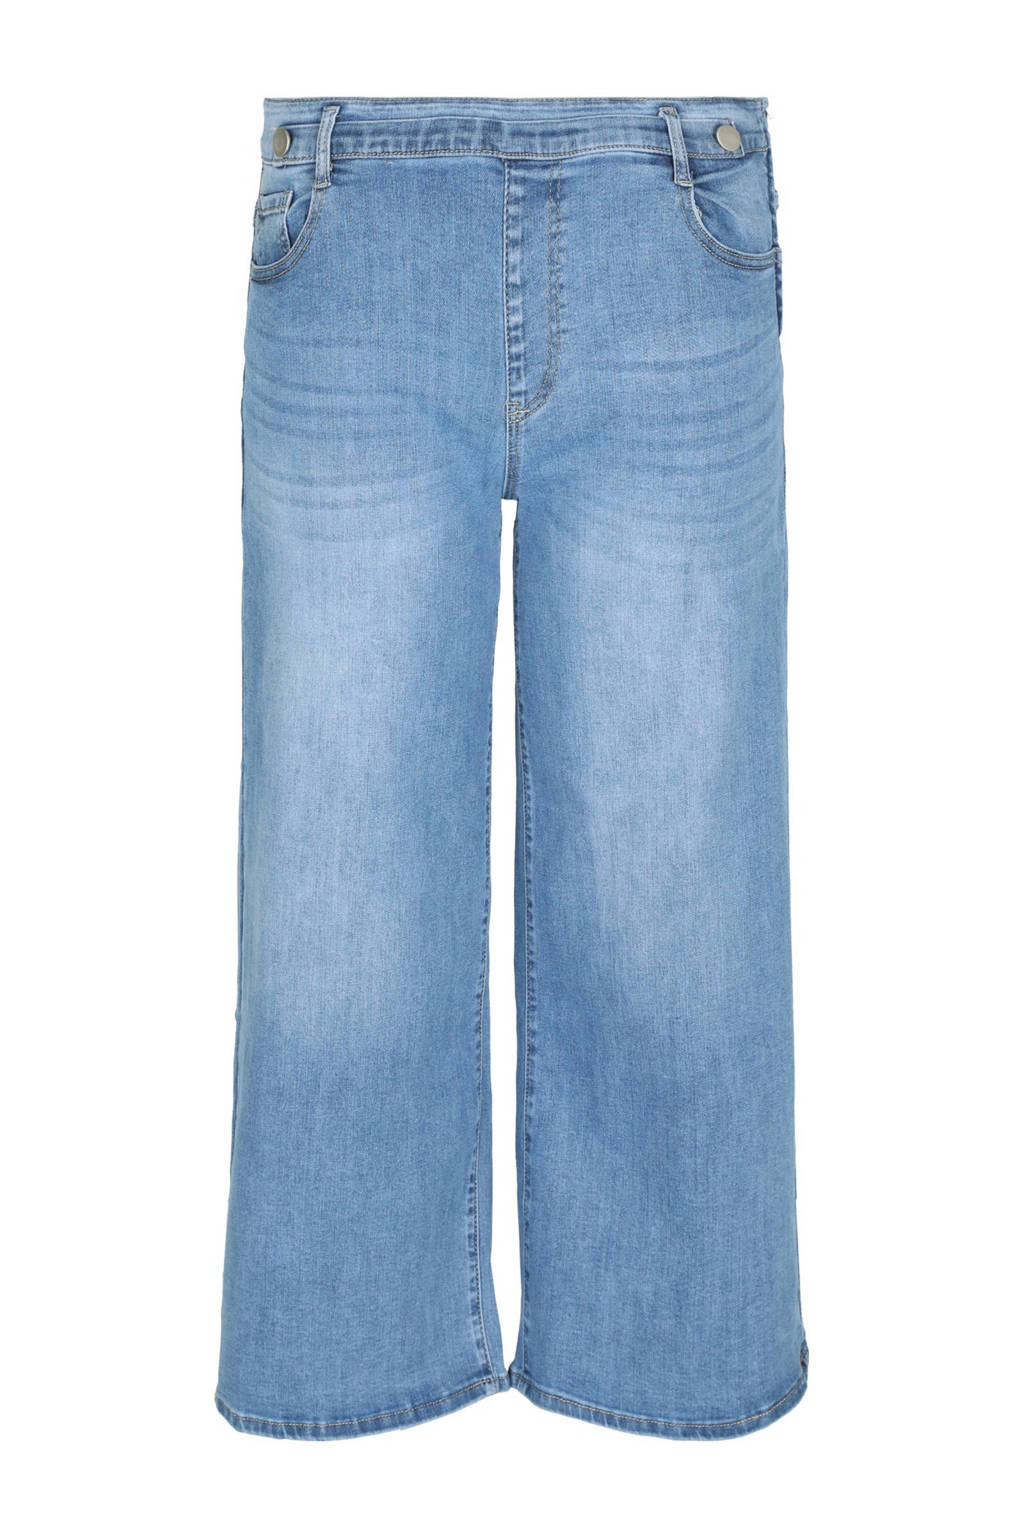 Paprika high waist wide leg jeans light denim